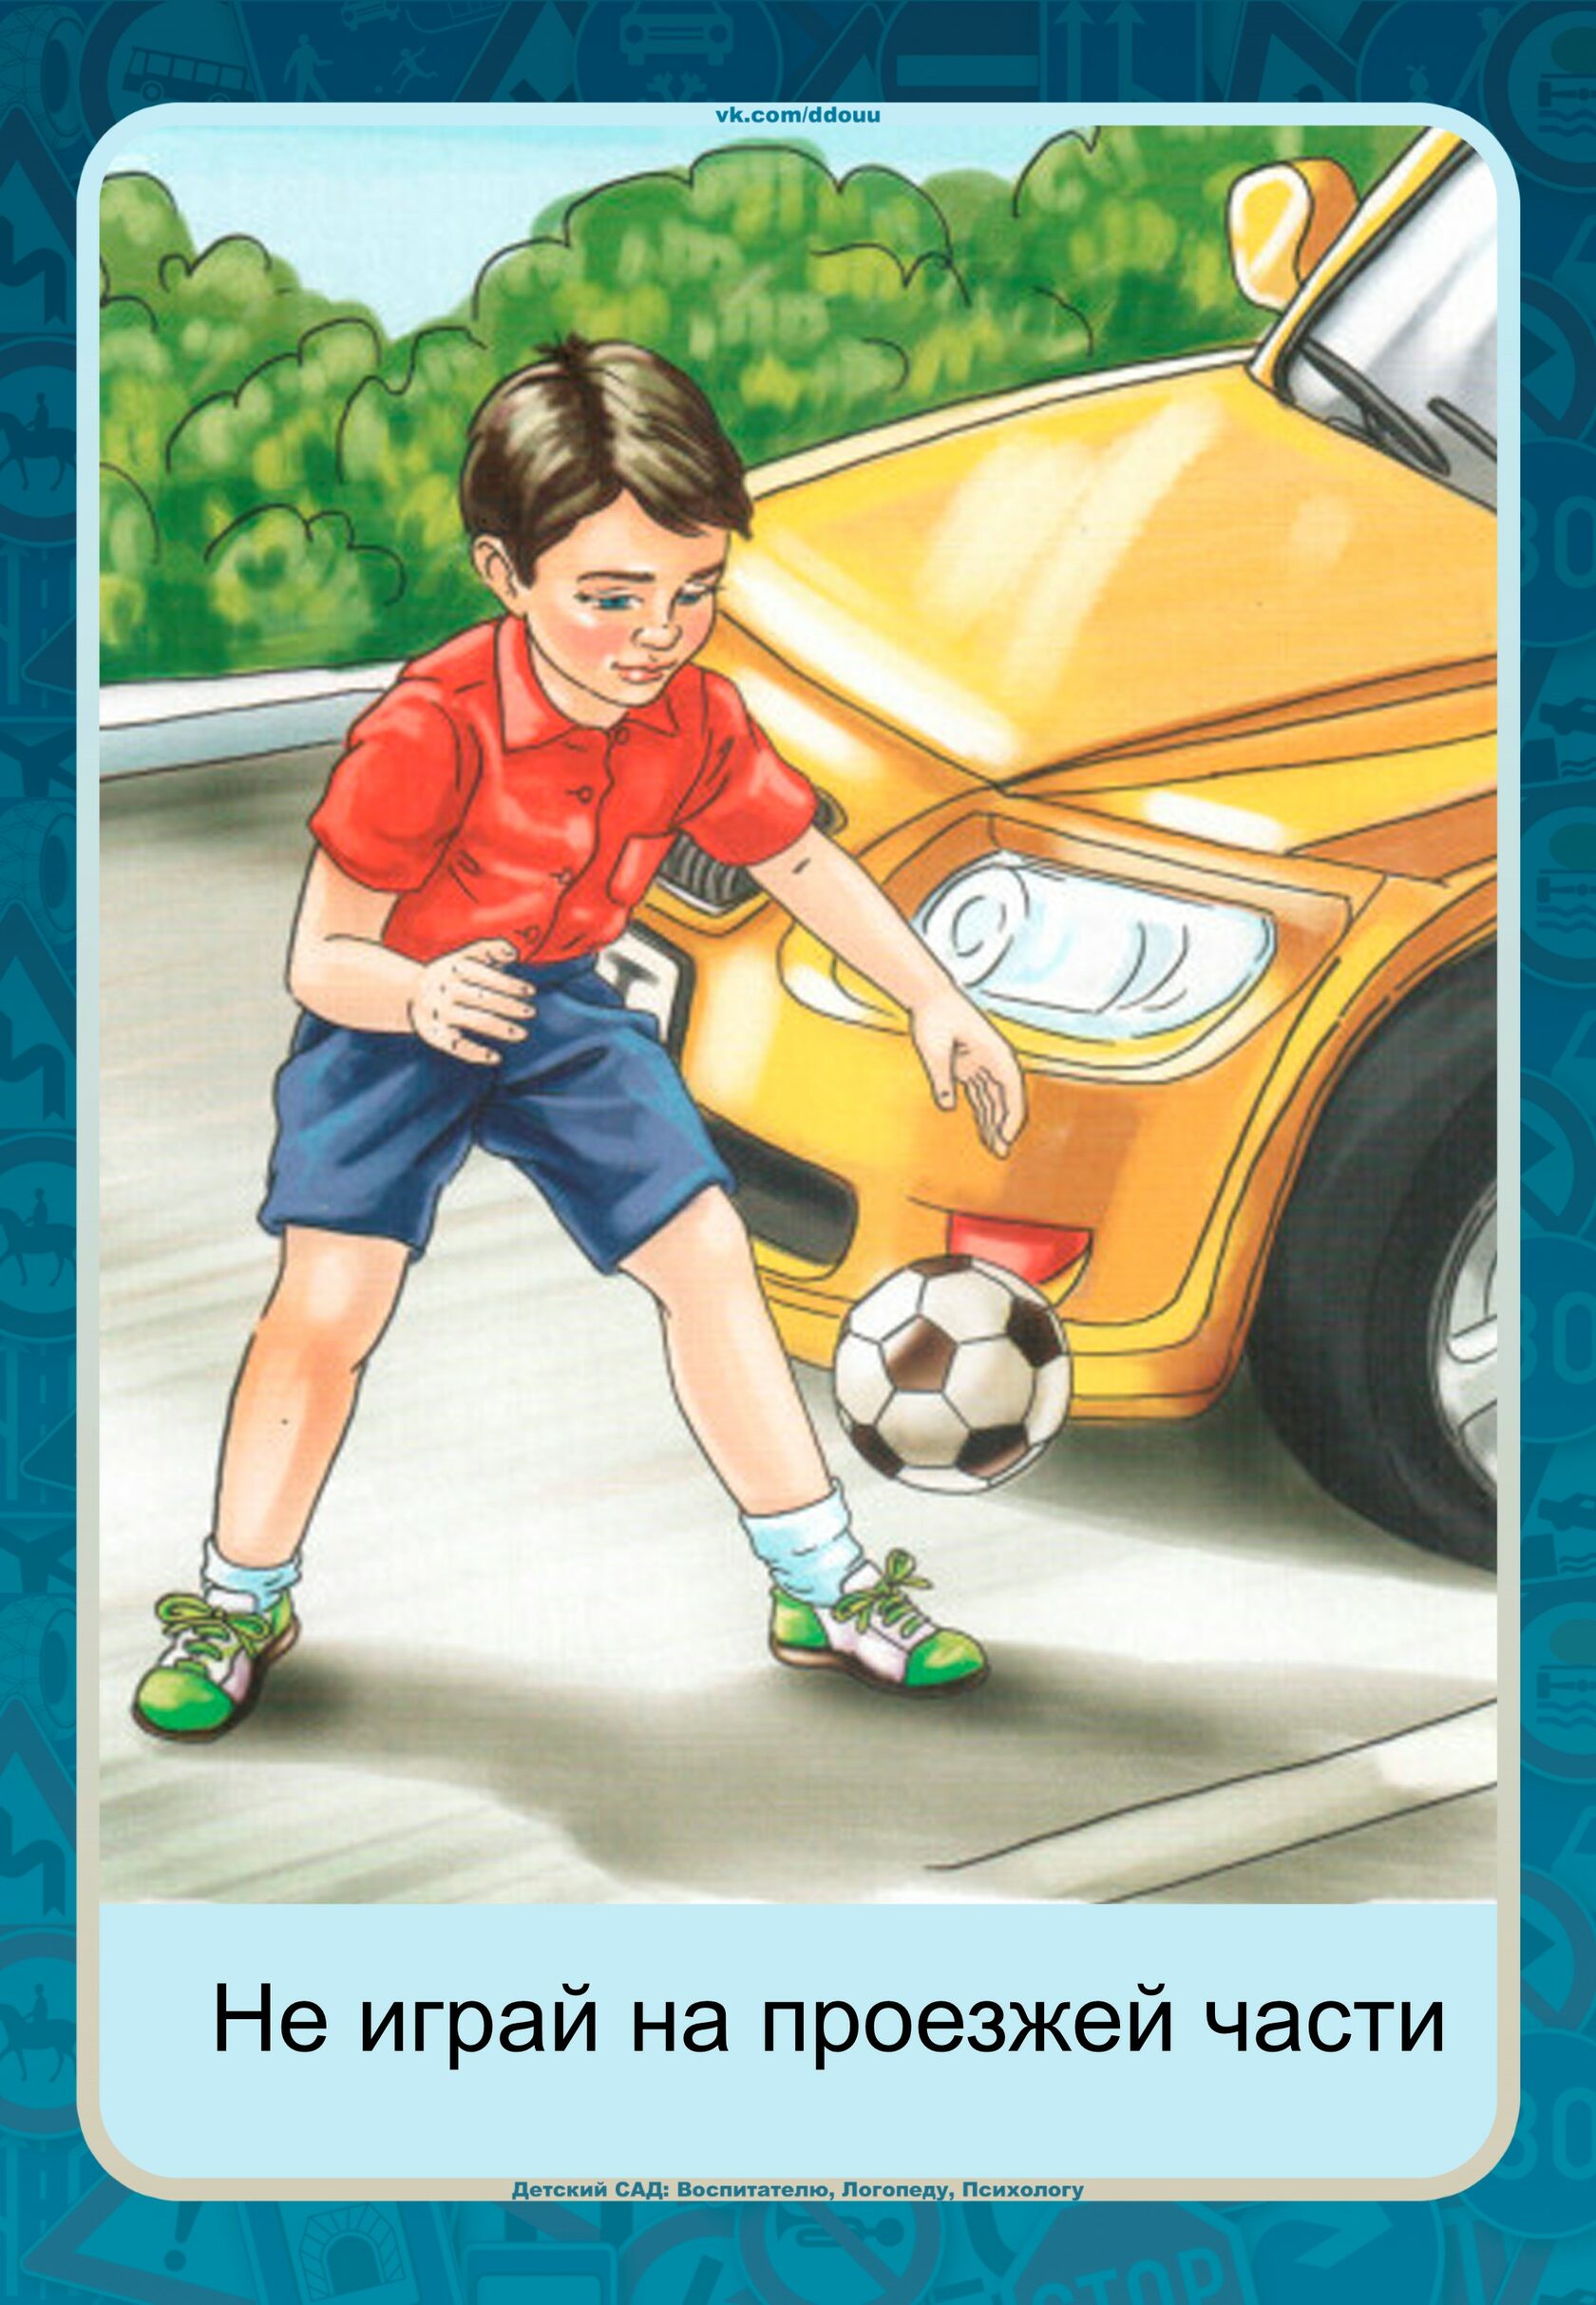 Ребенок играет на дороге. Мальчик с мячом на дороге. Картина для детей не играй на дороге. Дети играют на дороге иллюстрация. Рисунки с детьми играющимися на дороге.